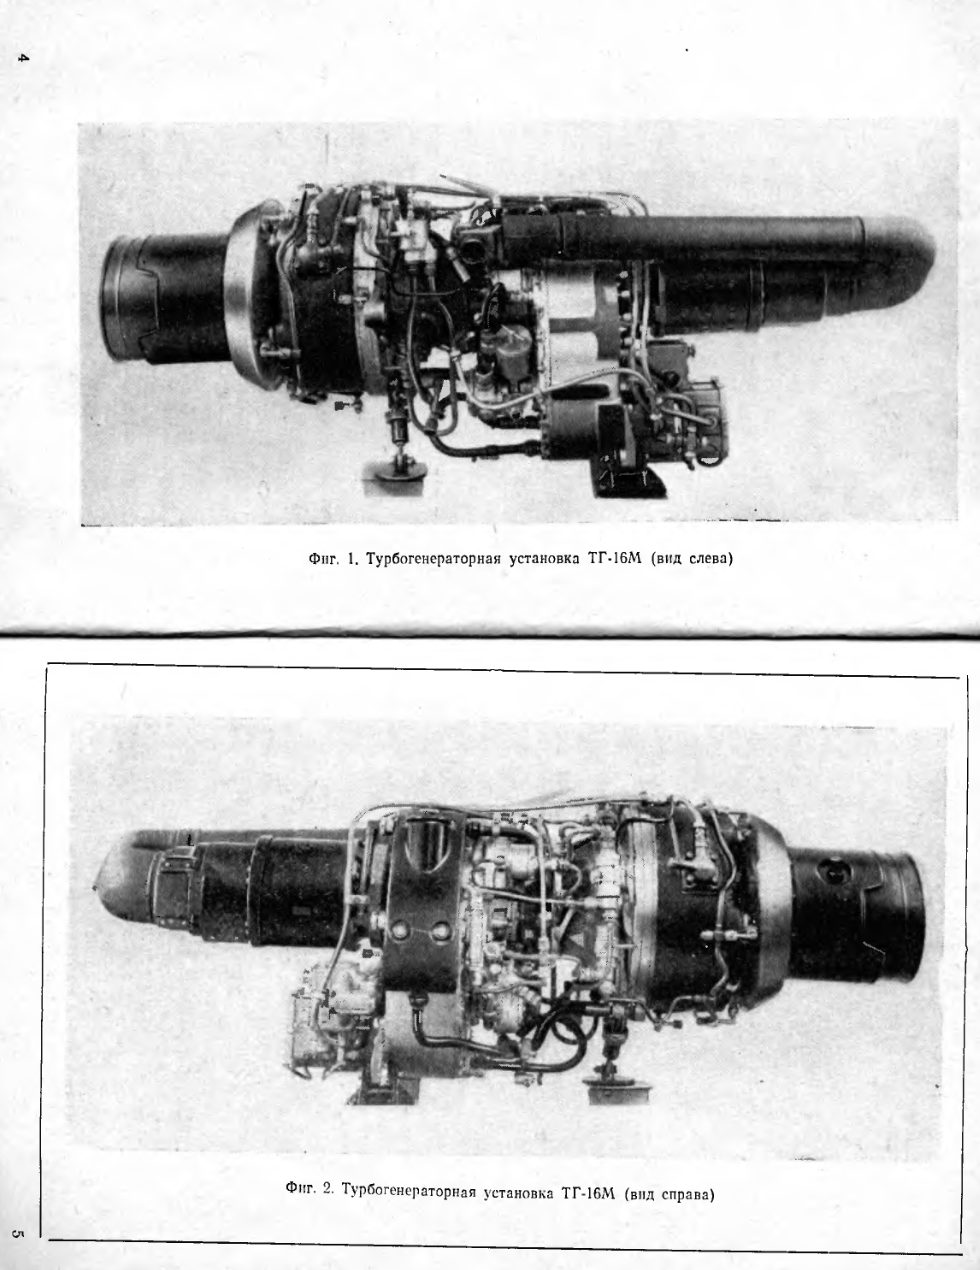 ТГ-16М. Турбогенераторная установка ТГ-16М. ТО. 1971